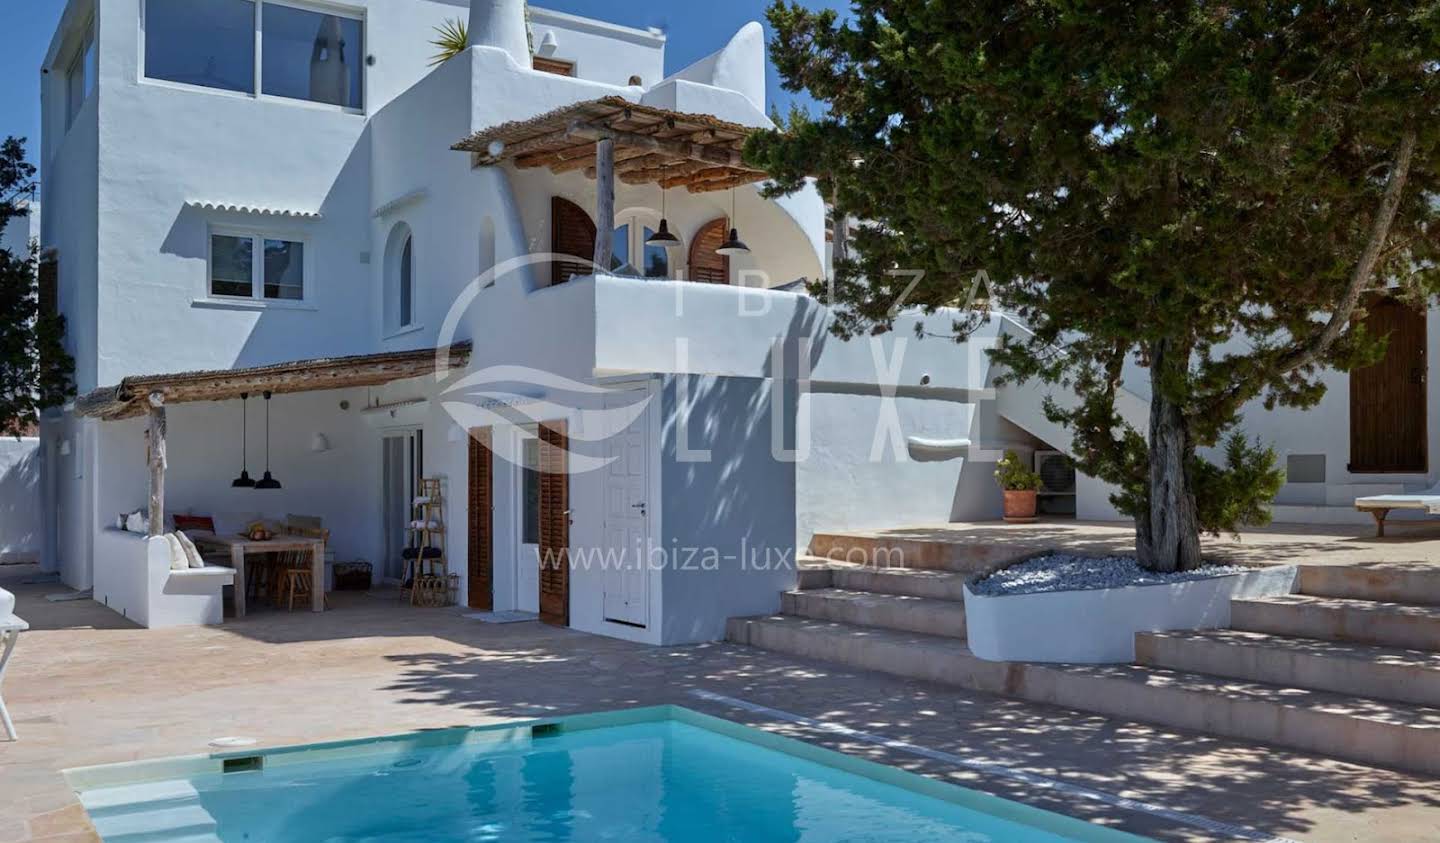 Seaside house with pool Ibiza